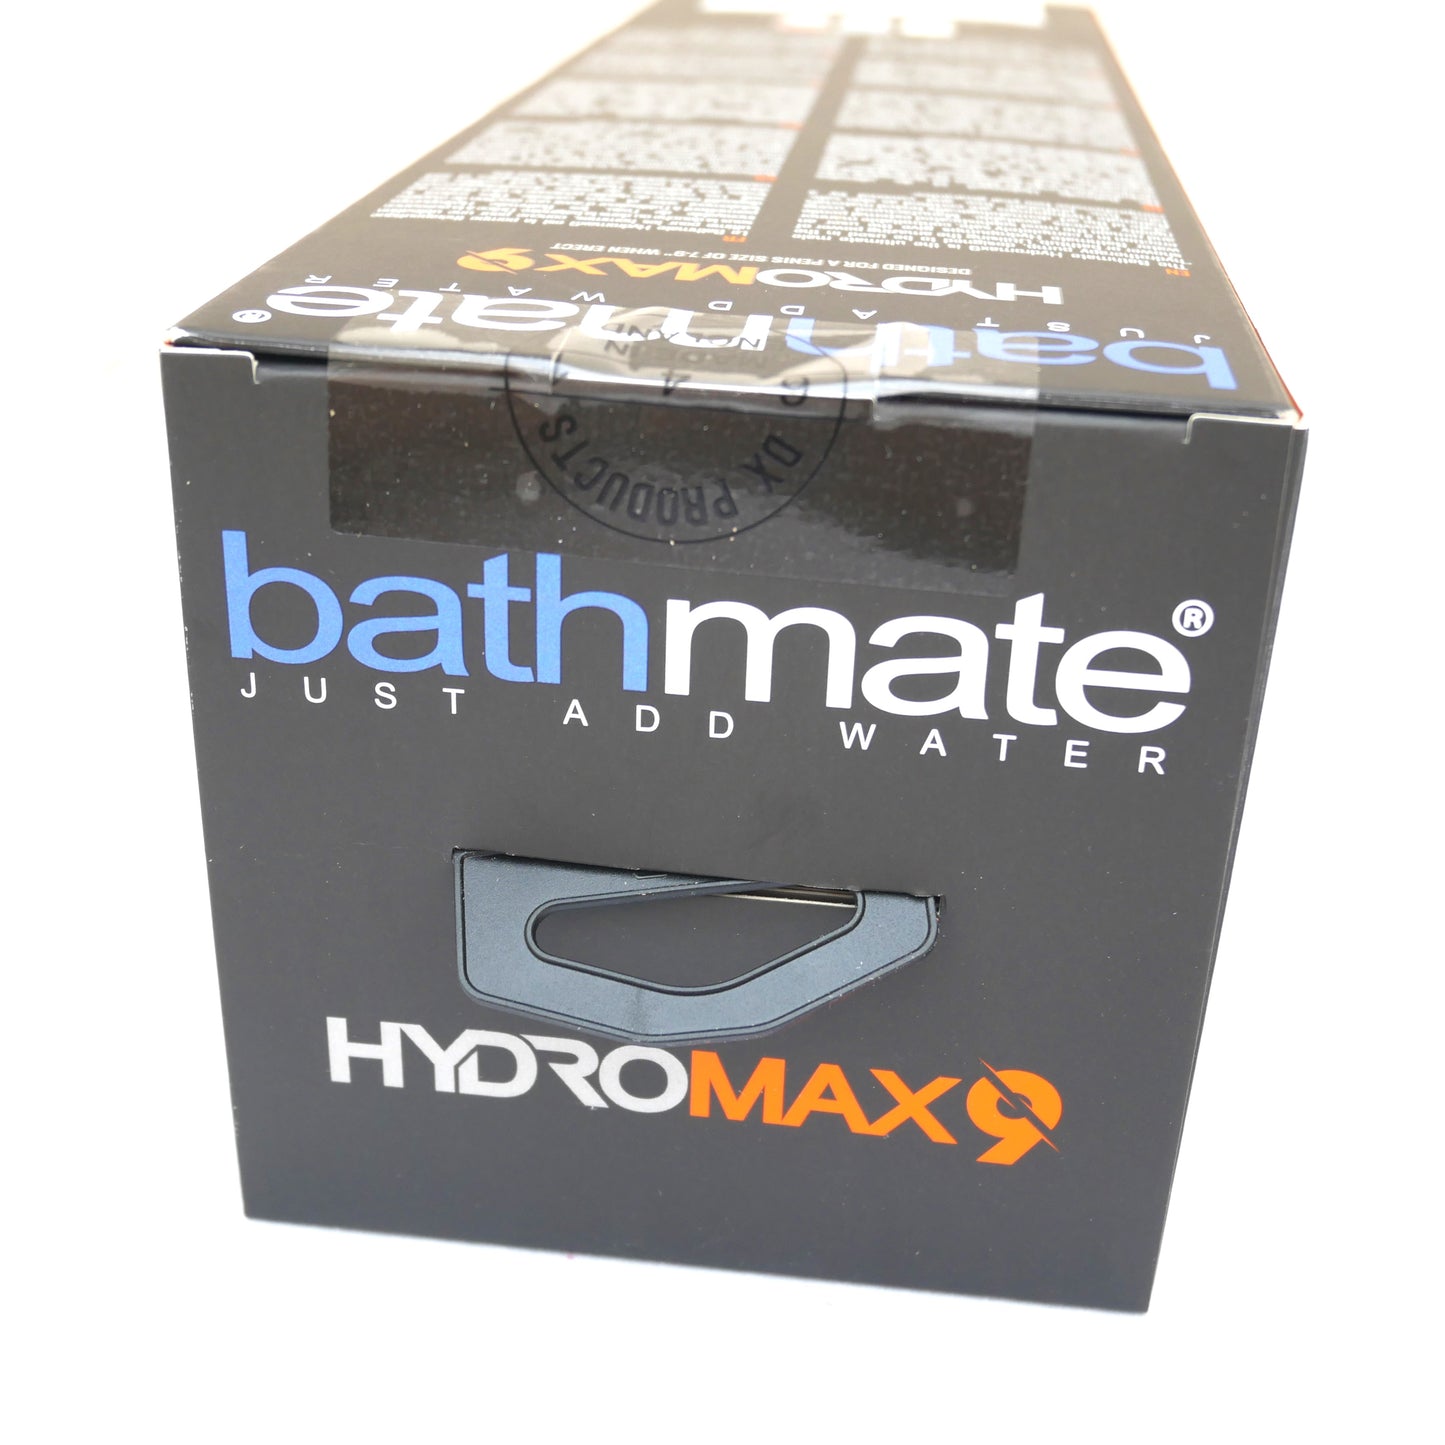 Pompa per l'ingrandimento del pene Bathmate Hydromax 9 trasparente